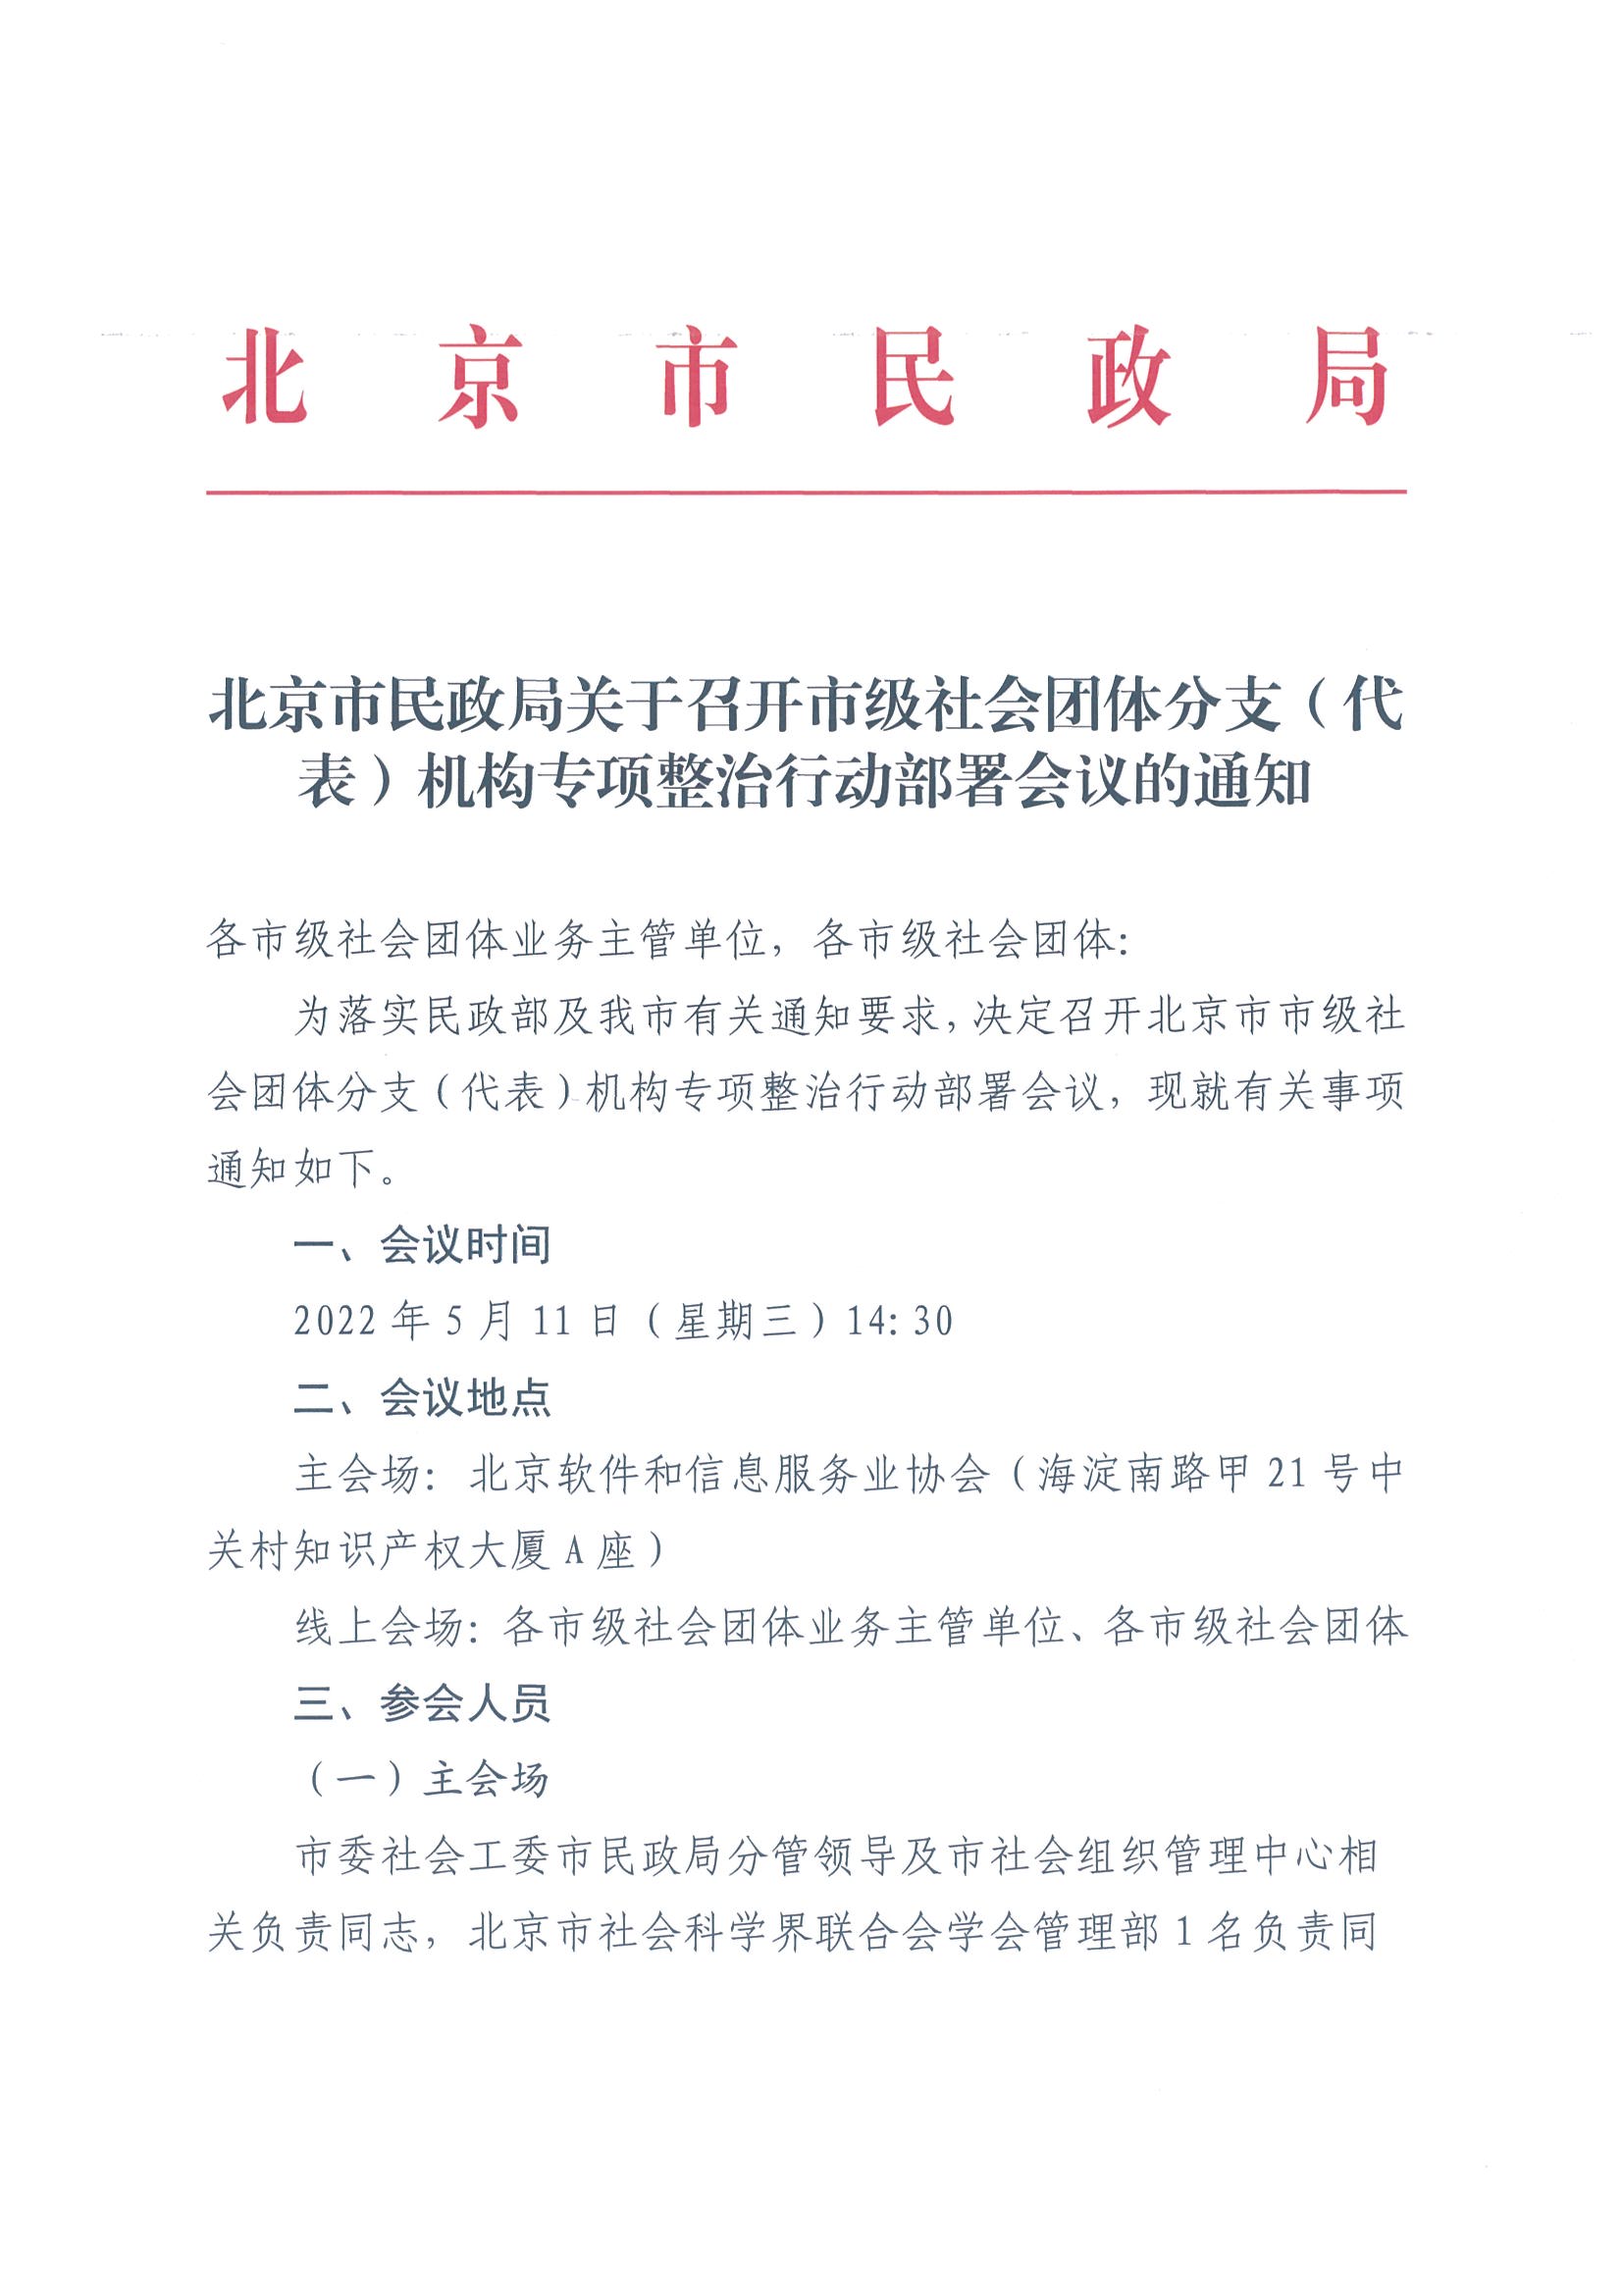 北京市民政局关于召开市级社会团体分支（代表）机构专项整治行动部署会议的通知1(1)_页面_1.jpg